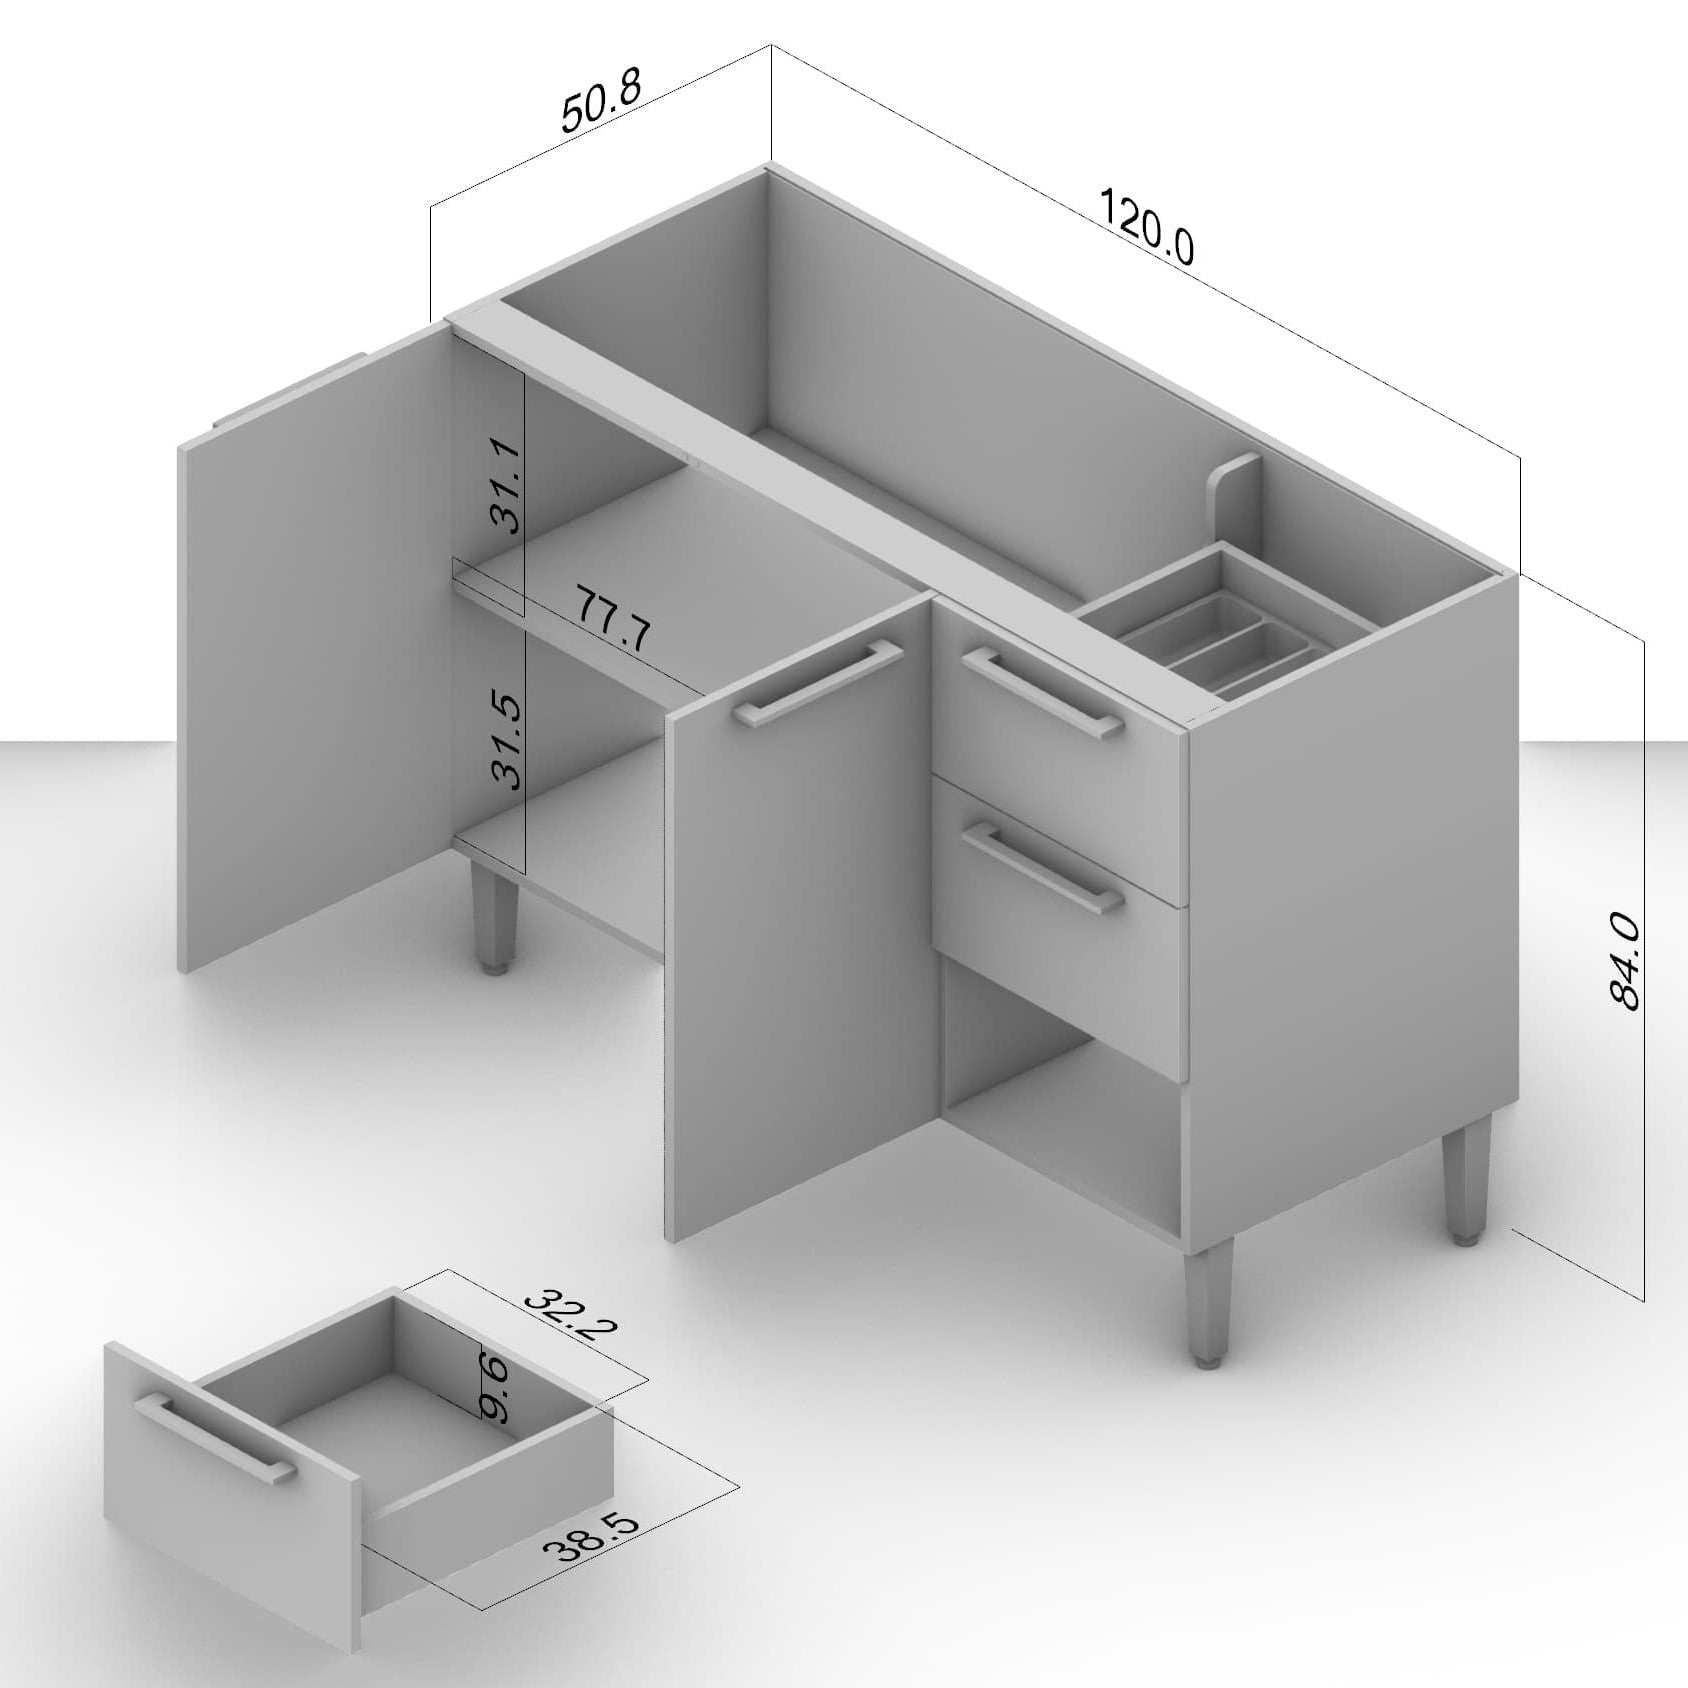 Canelone 3 drawers 2 doors 120cm kitchen floor cupboard (8)